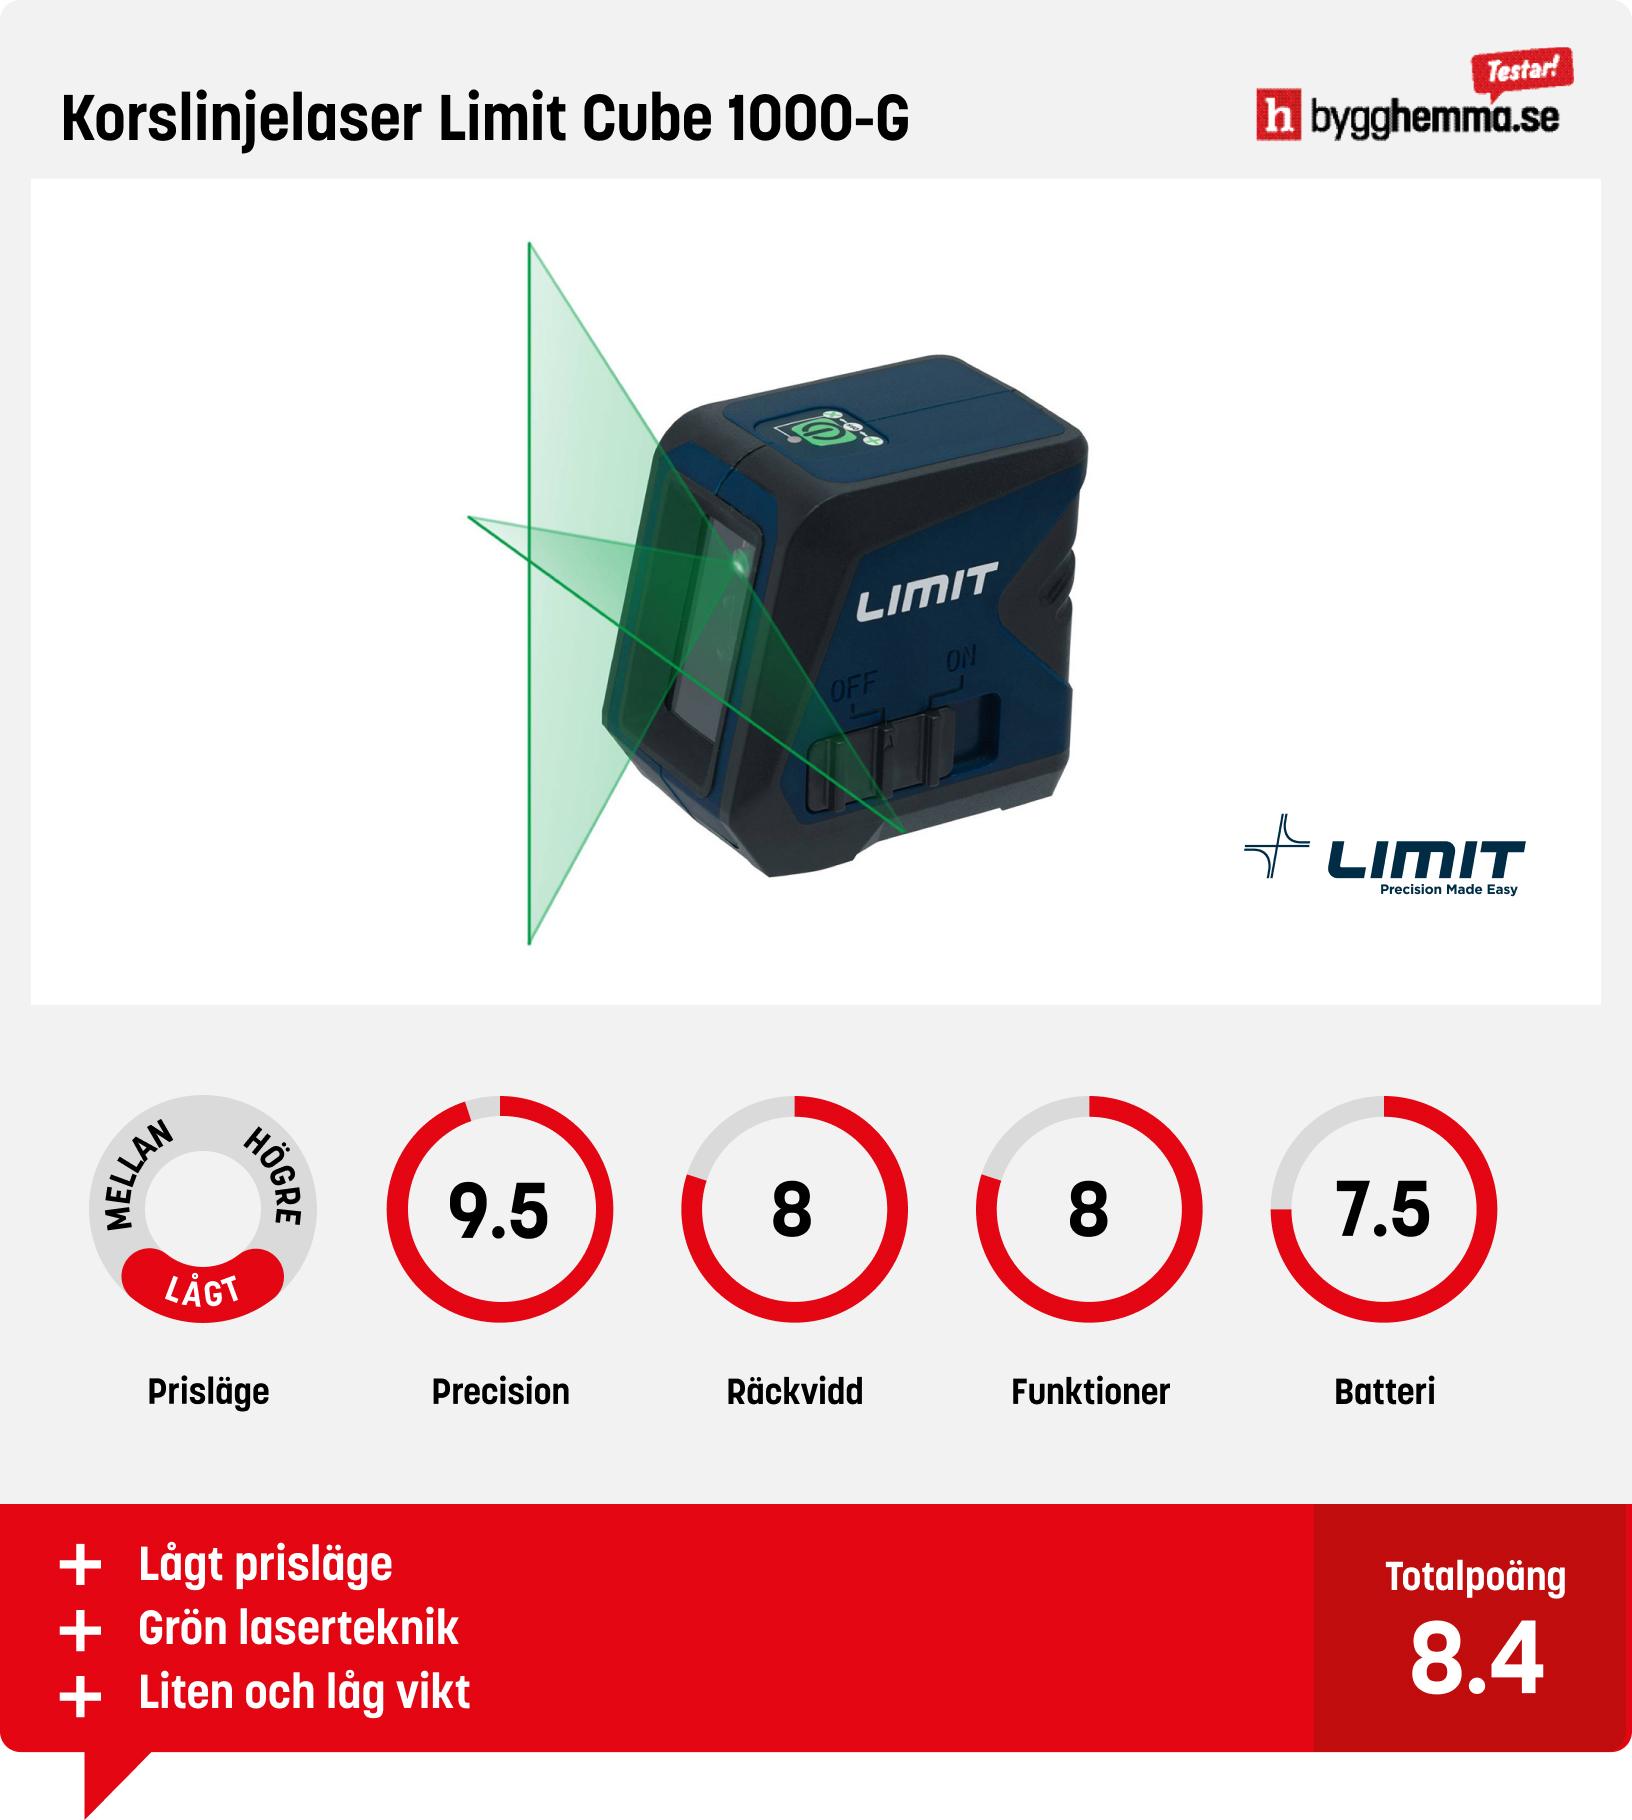 Krysslaser test - Korslinjelaser Limit Cube 1000-G